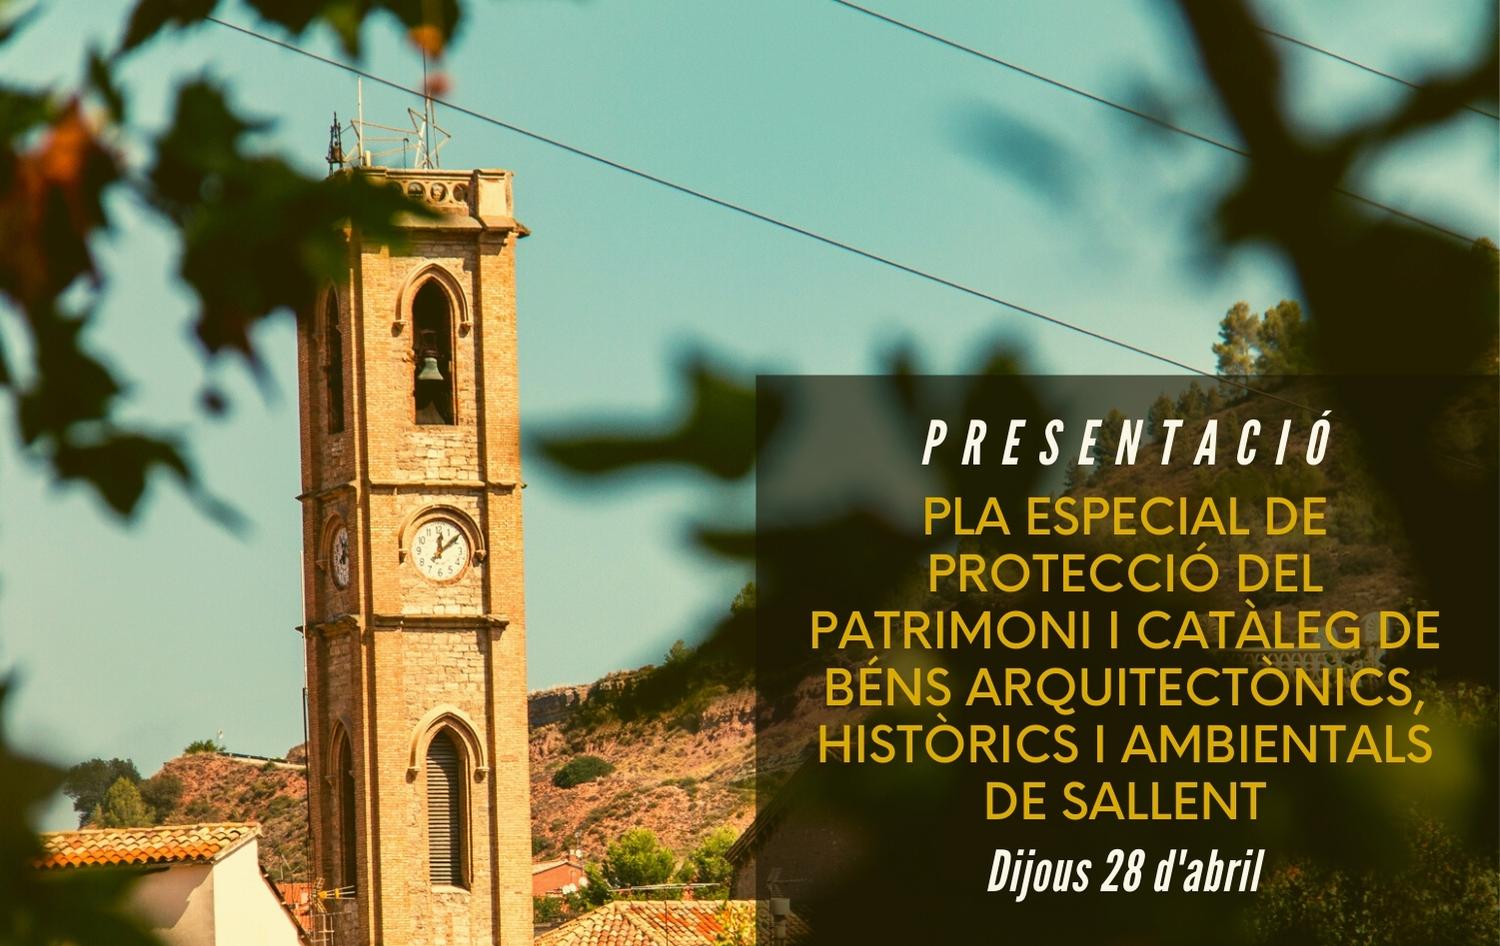 Presentació 28 d'abril: Pla Especial de protecció del patrimoni i catàleg de béns arquitectònics, històrics i ambientals del municipi